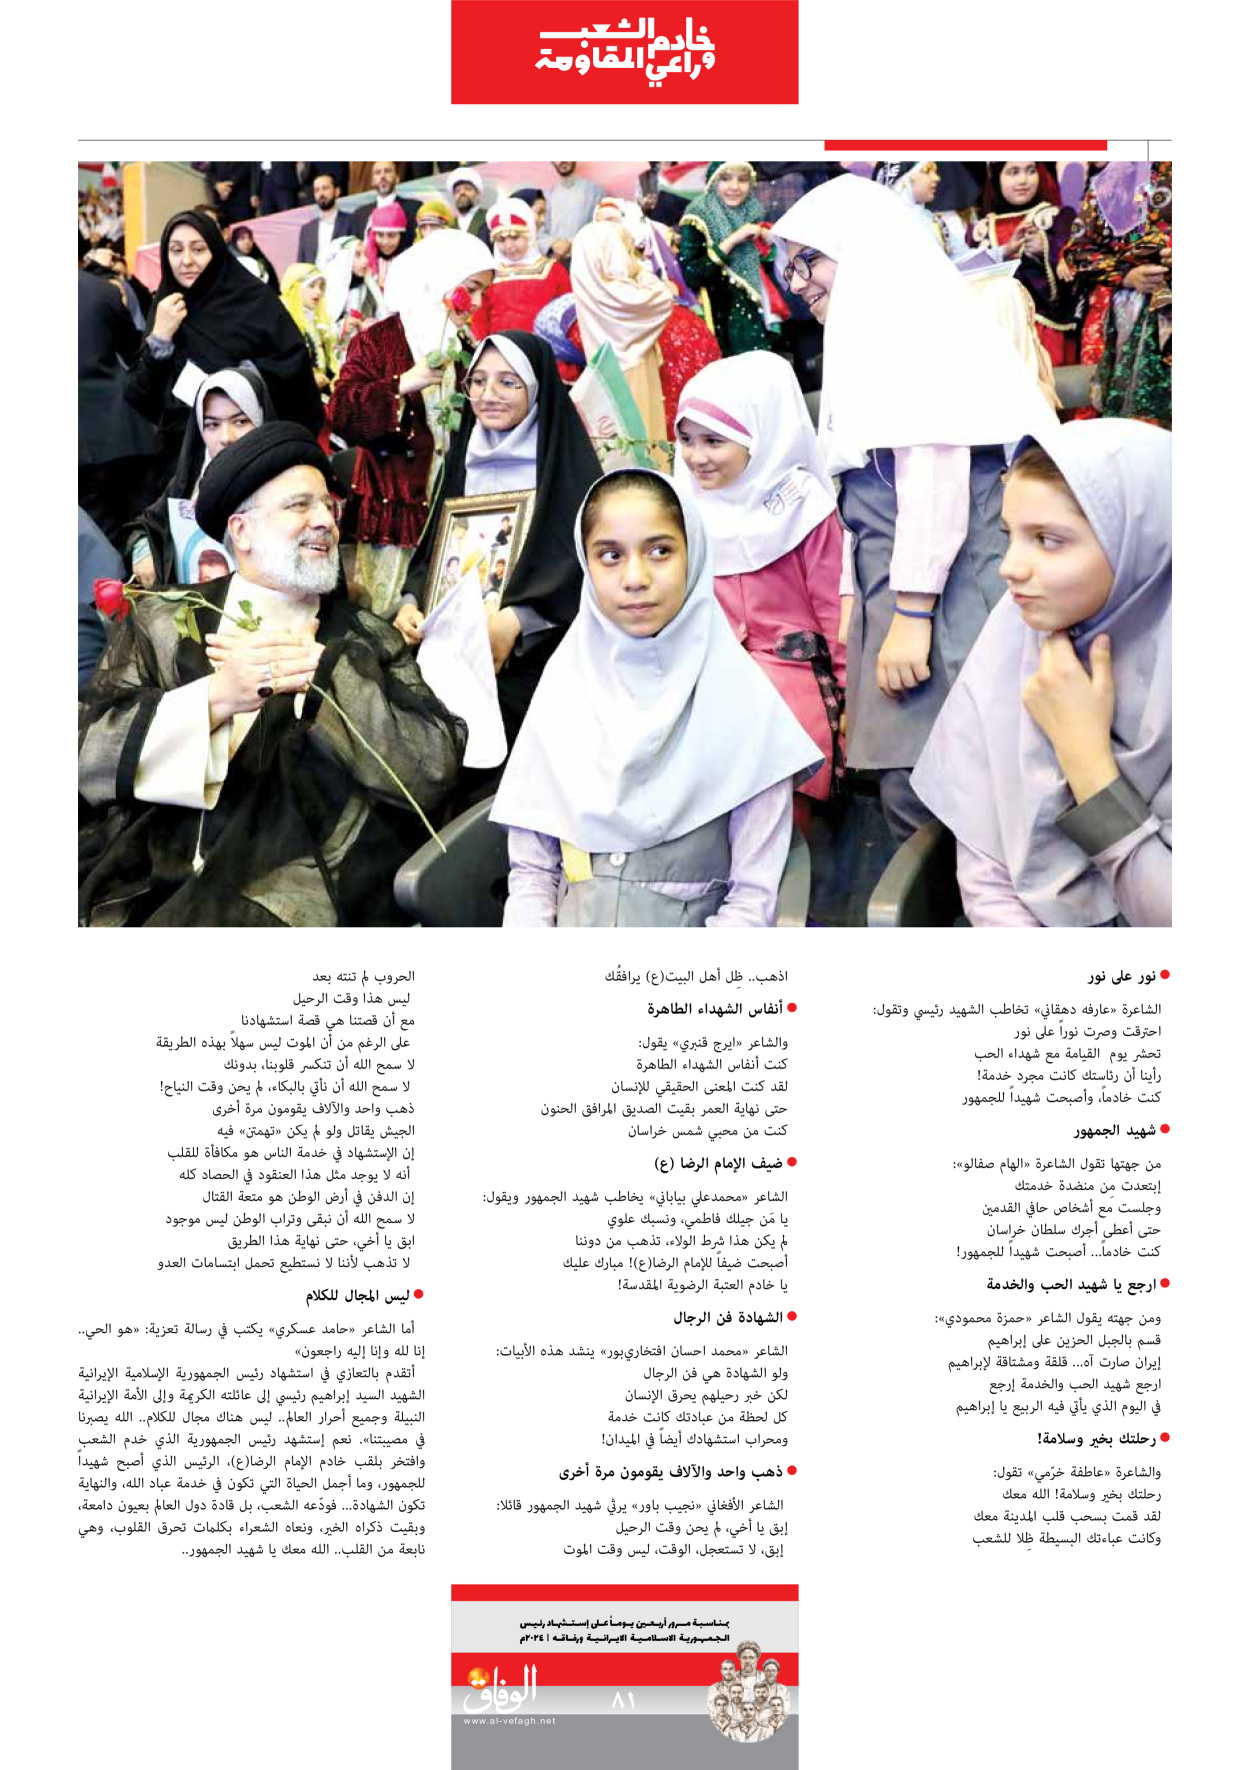 صحیفة ایران الدولیة الوفاق - ملحق ویژه نامه چهلم شهید رییسی - ٢٩ يونيو ٢٠٢٤ - الصفحة ۸۱